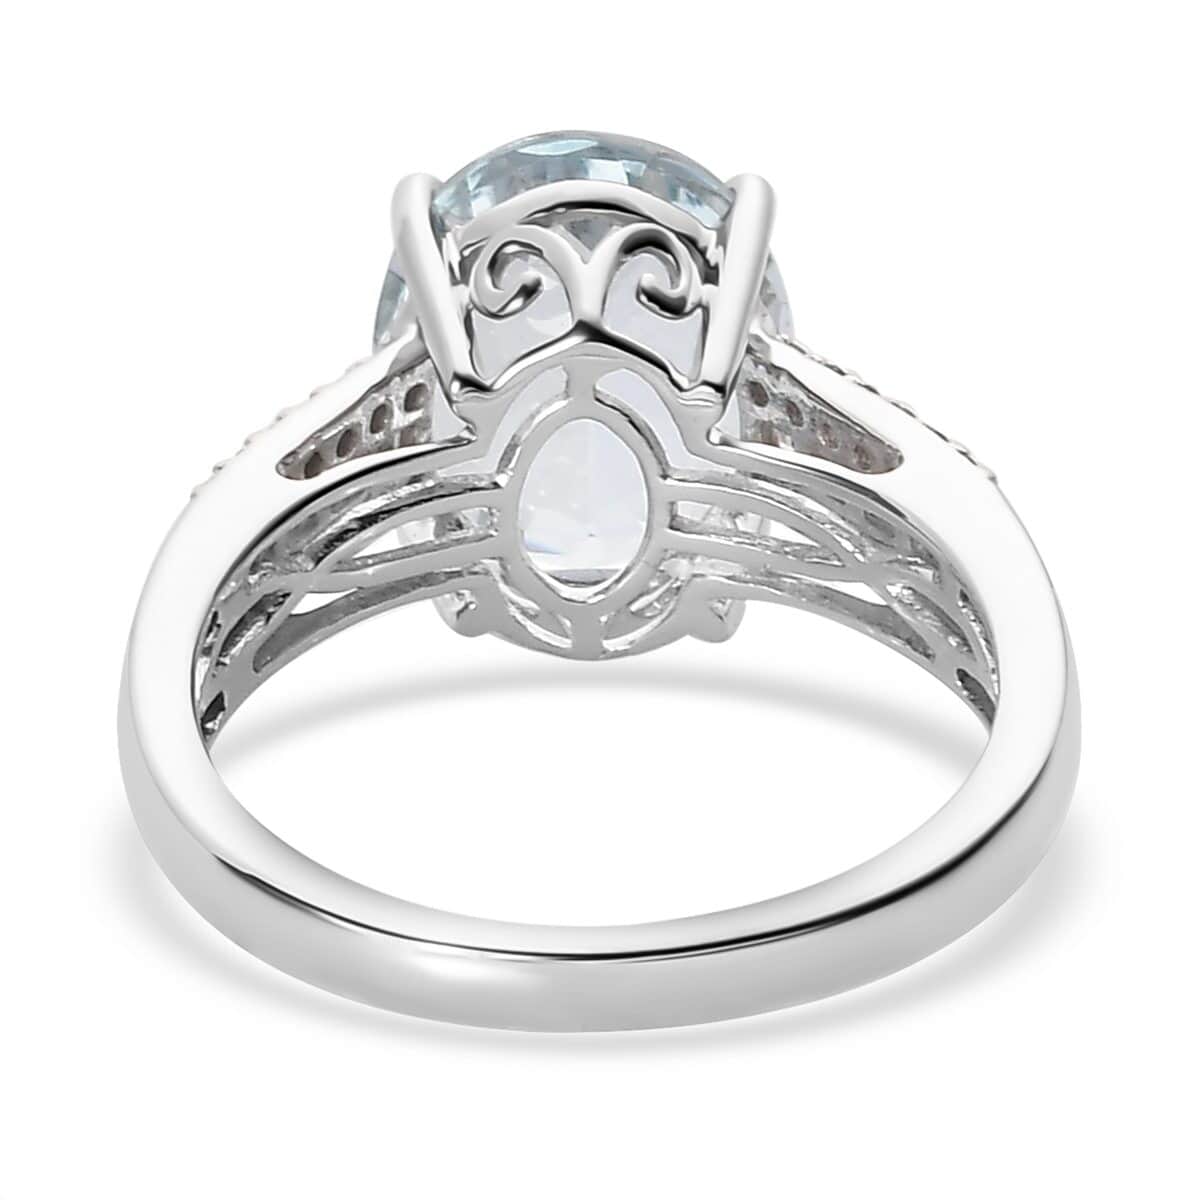 Luxoro 10K White Gold Premium Mangoro Aquamarine and Diamond Ring (Size 10.0) 3.40 ctw image number 4